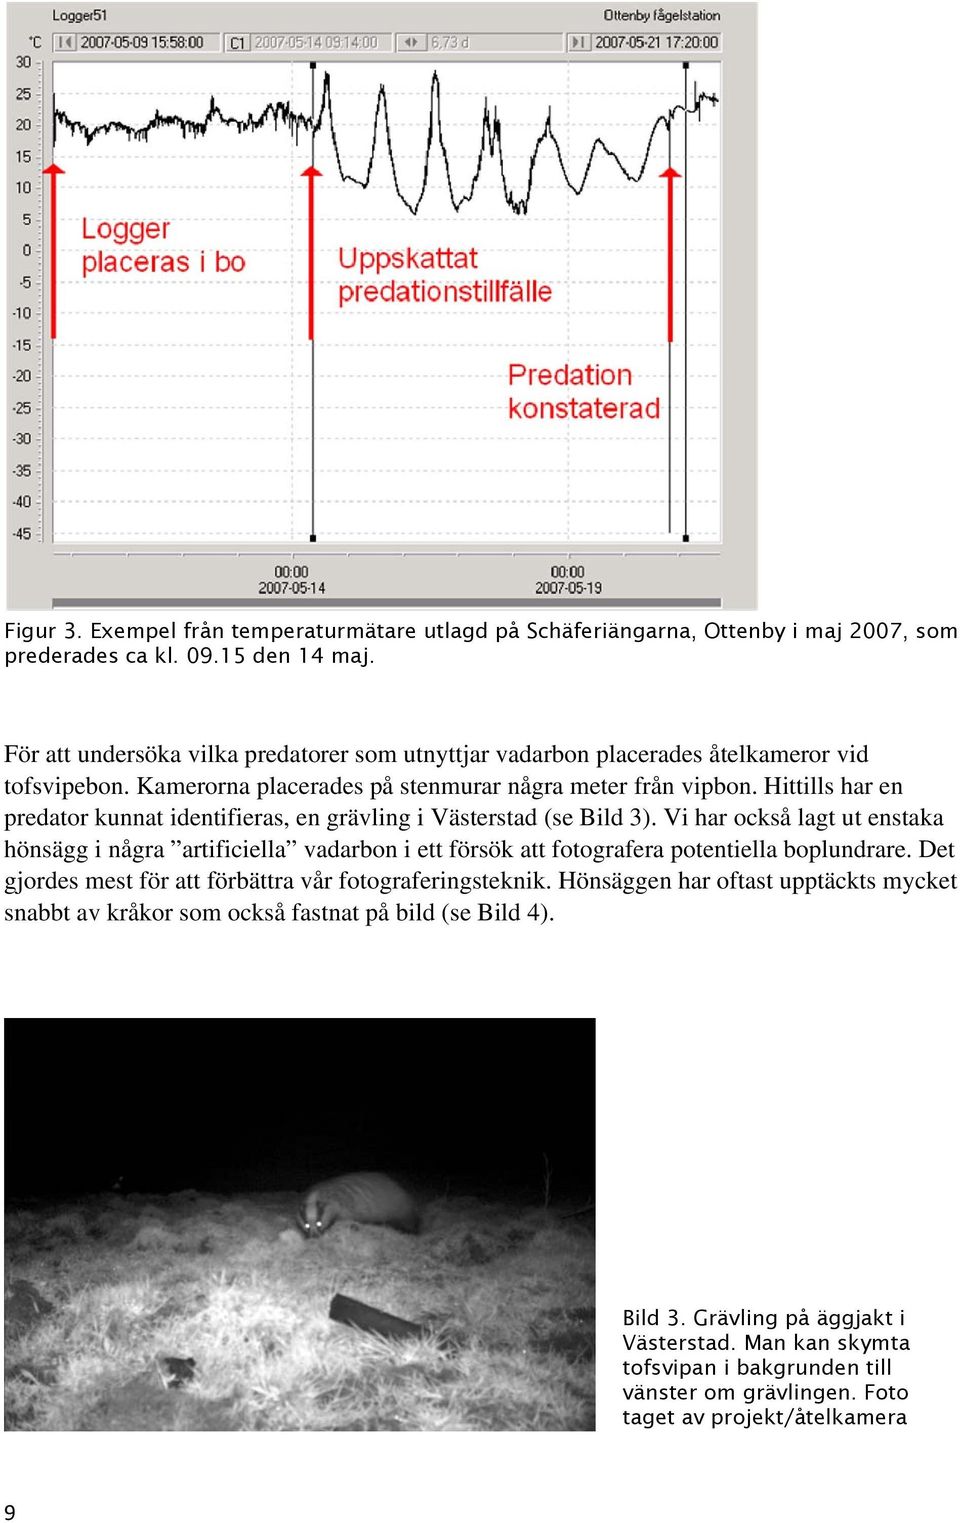 Hittills har en predator kunnat identifieras, en grävling i Västerstad (se Bild 3).